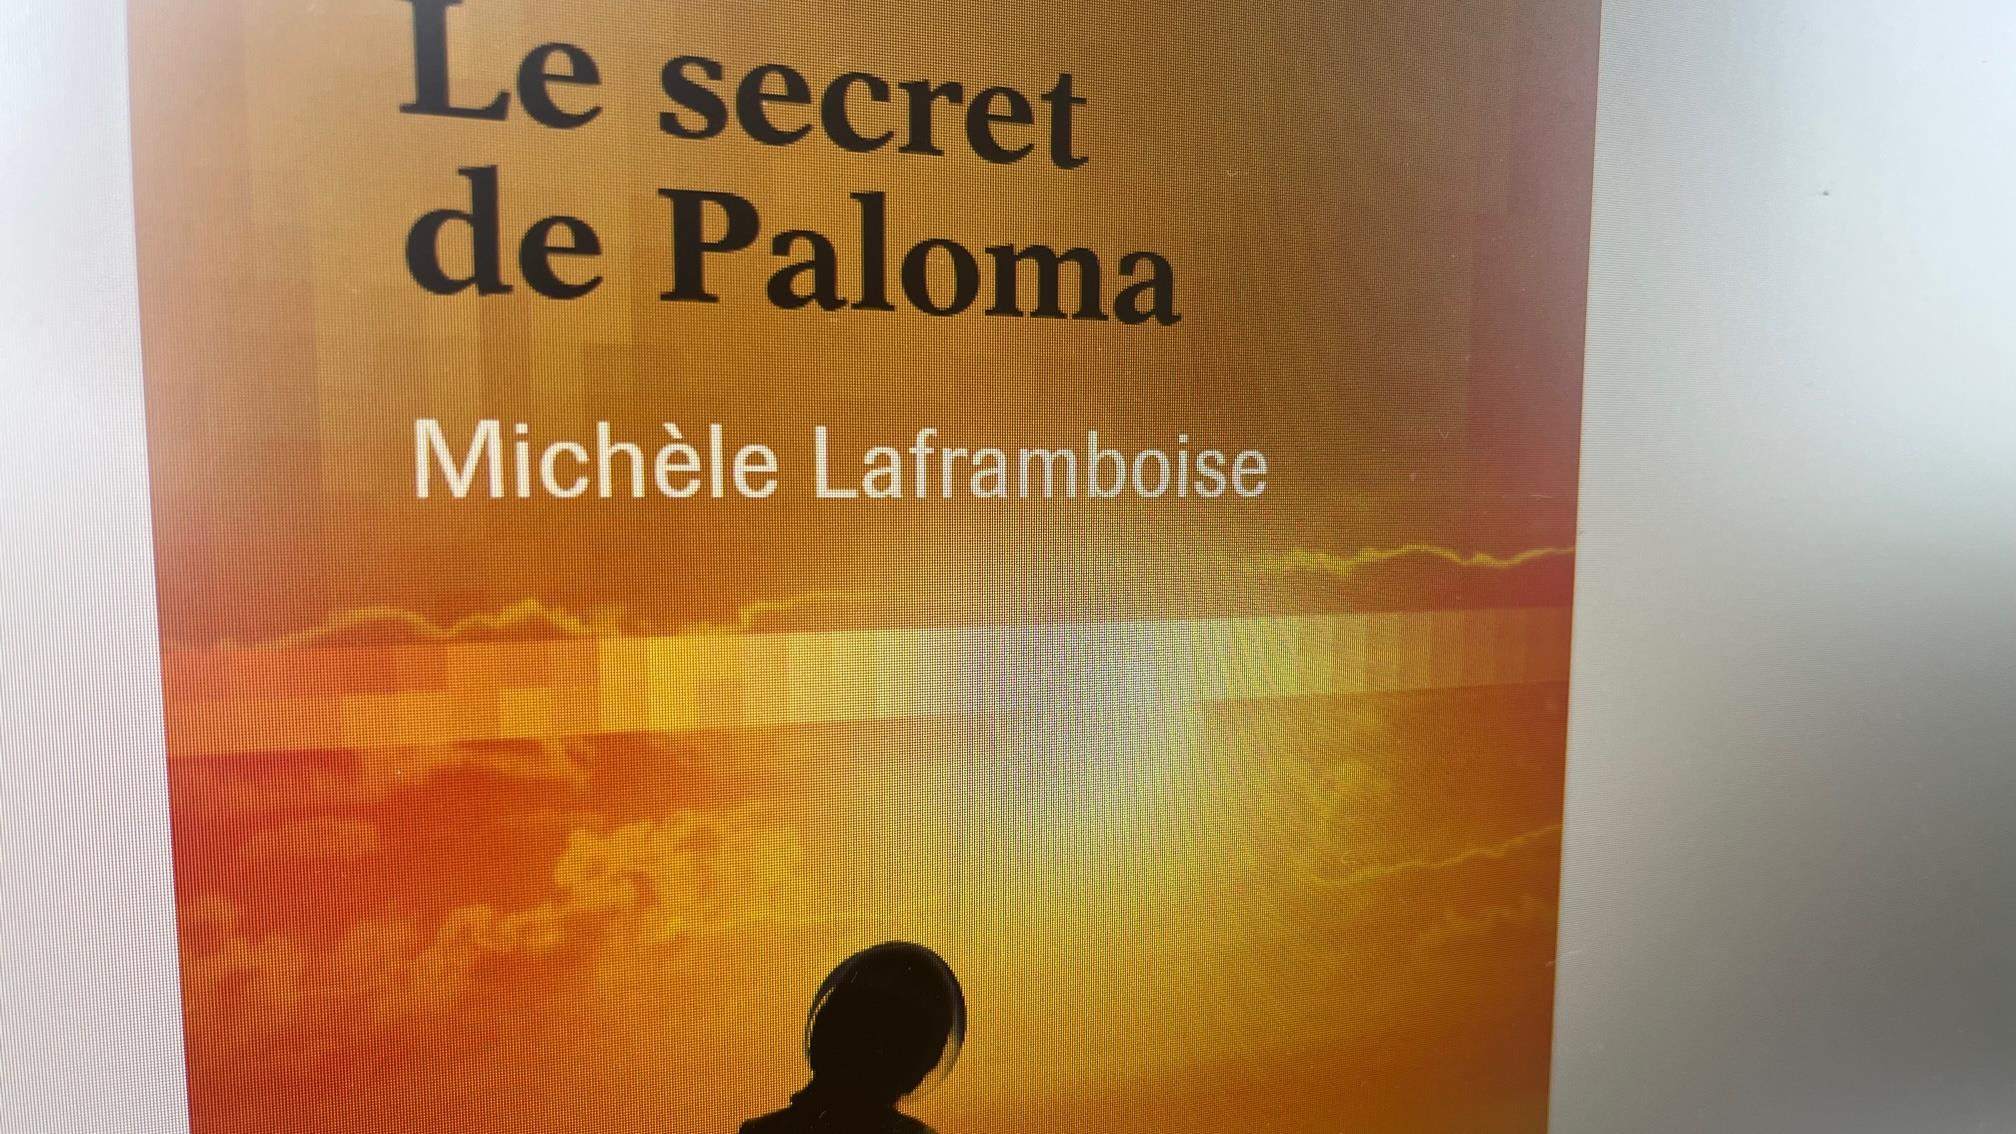 Michèle Laframboise, lauréate du prix littéraire Trillium jeunesse 2023
Michèle Laframboise, lauréate du prix littéraire Trillium jeunesse 2023